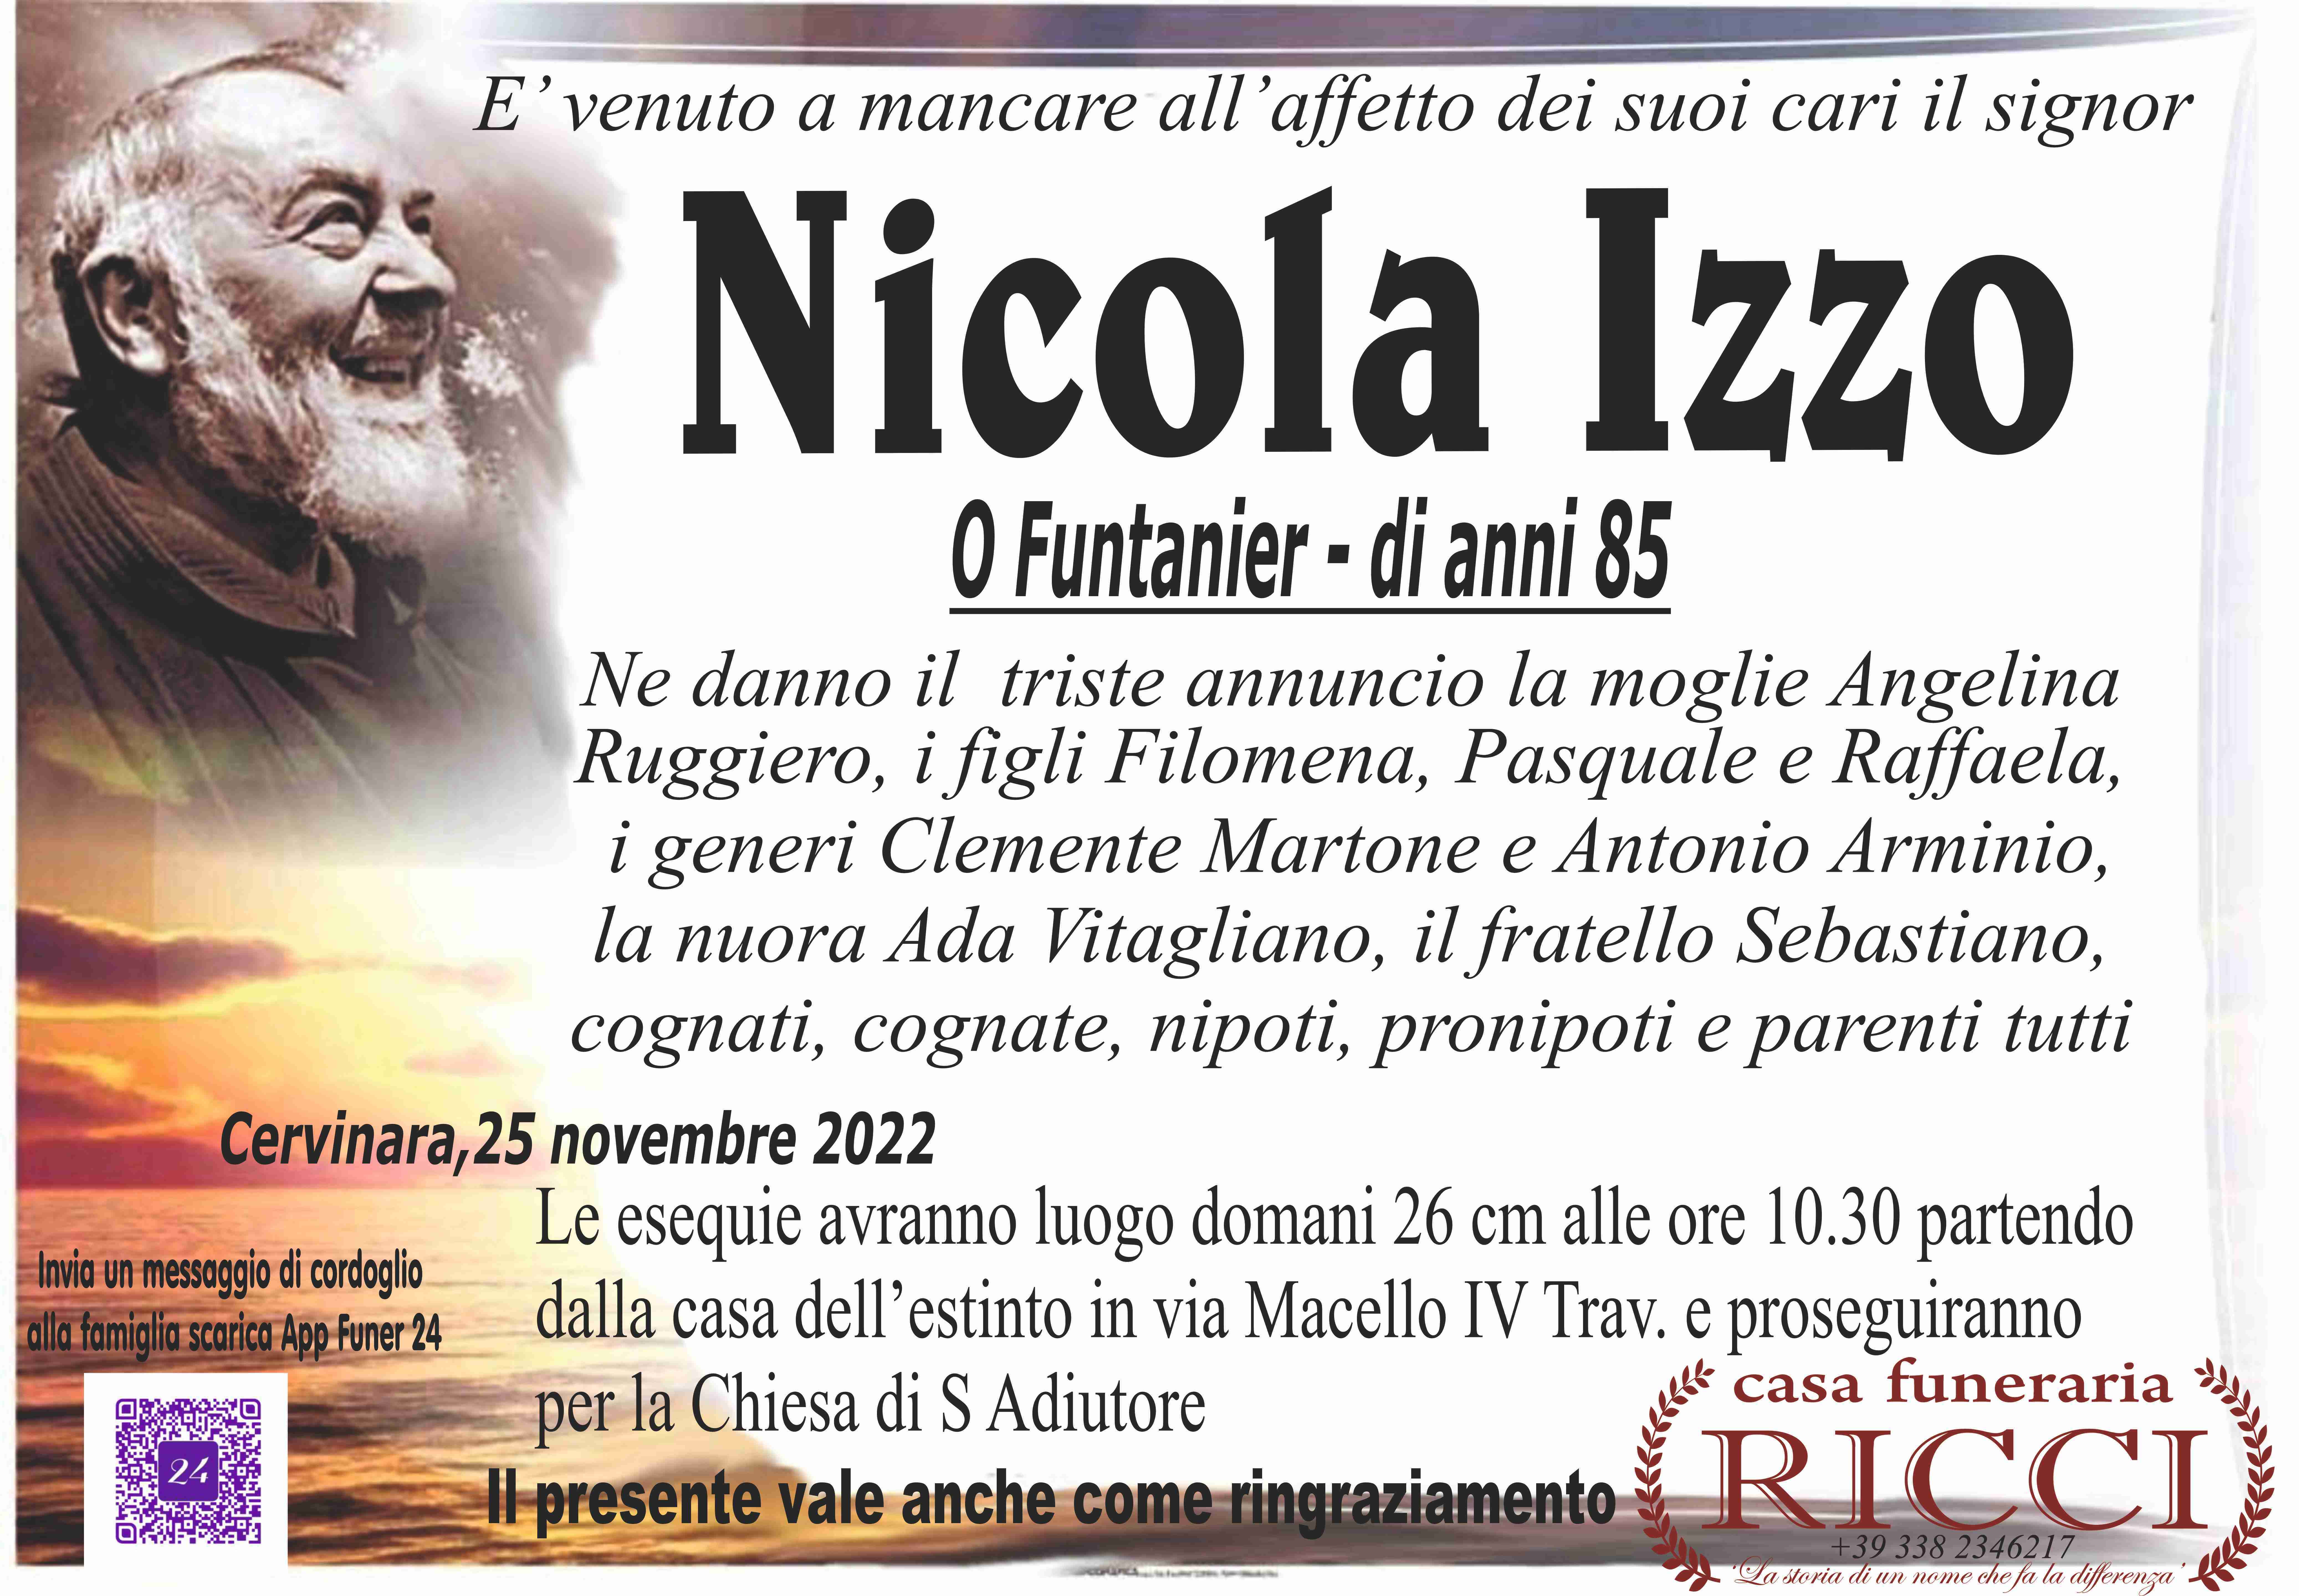 Nicola Izzo